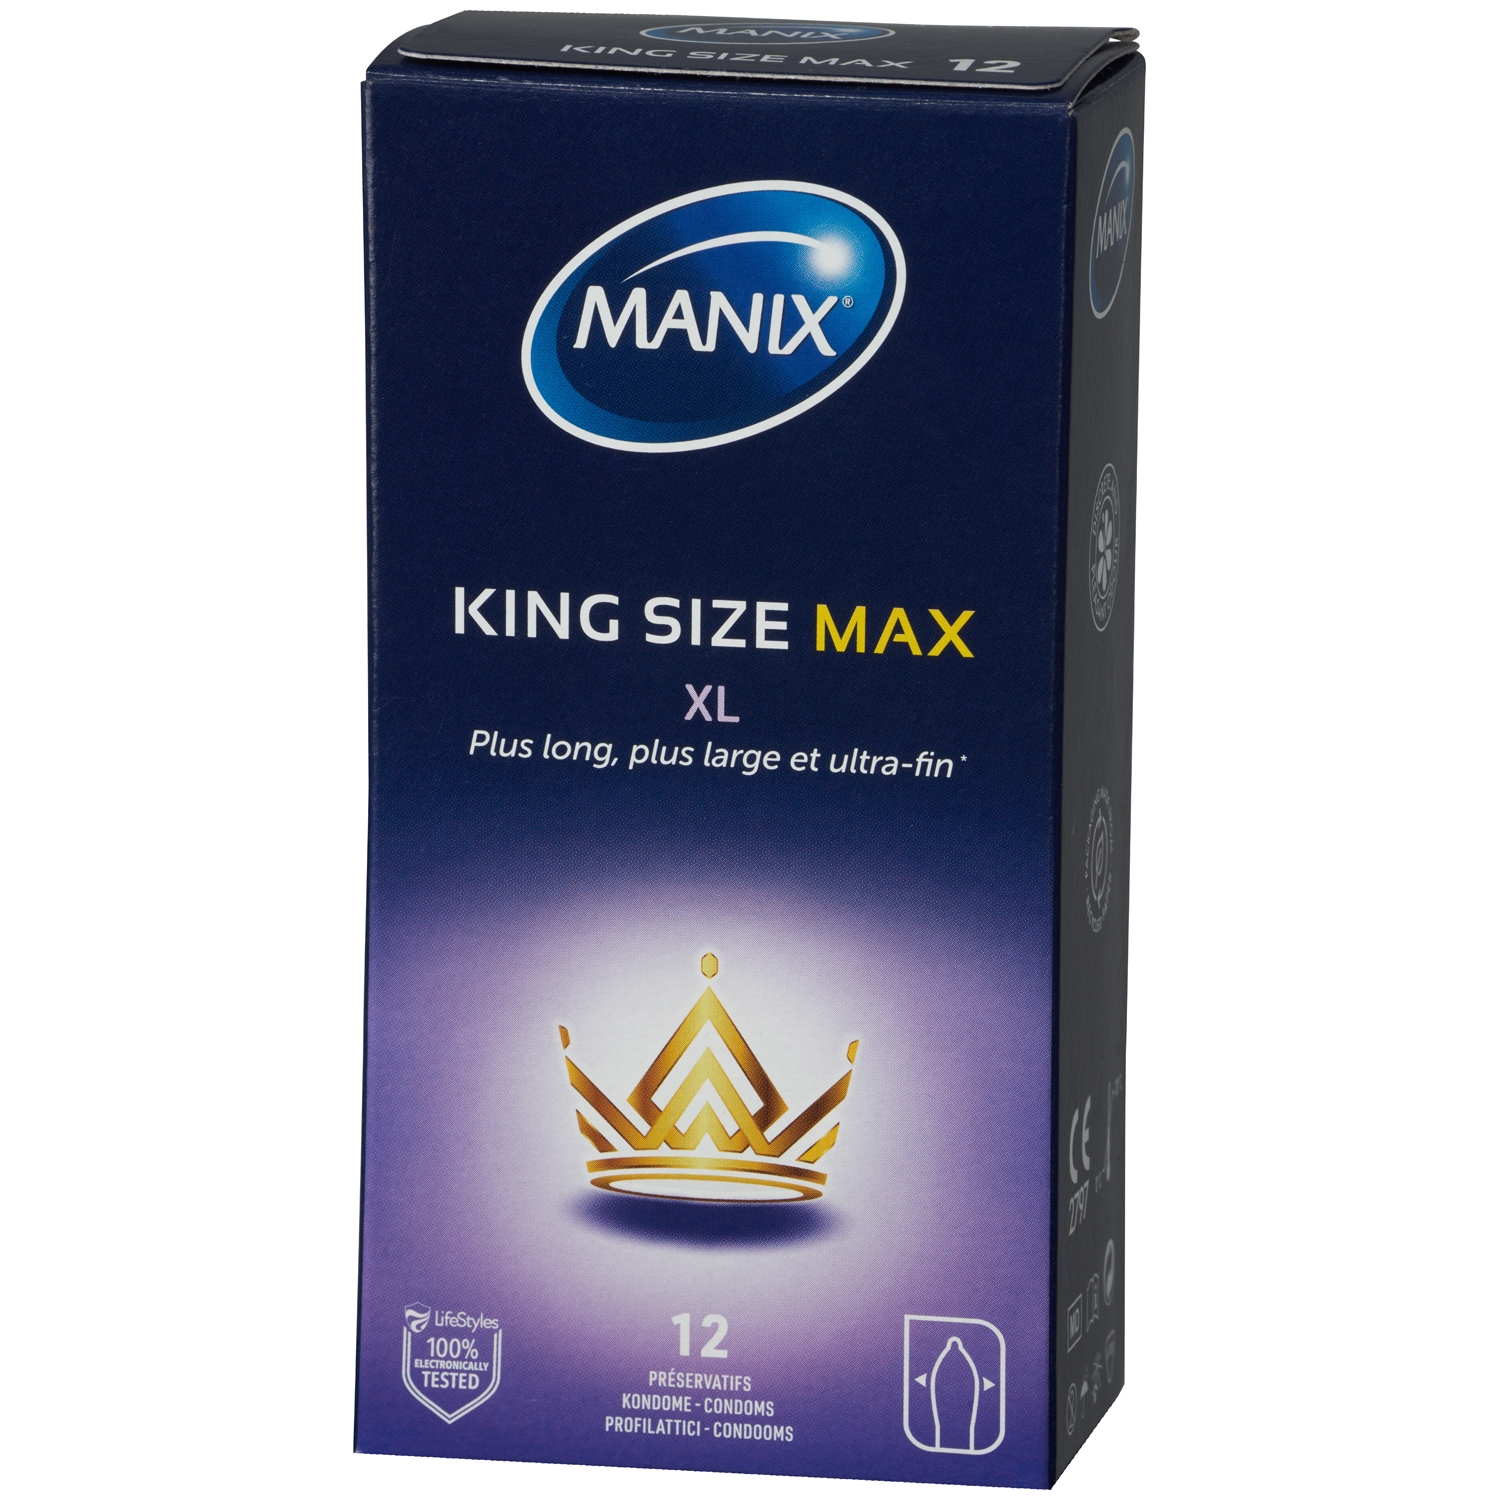 Manix King Size Max XL Kondomer 12 stk - Klar thumbnail